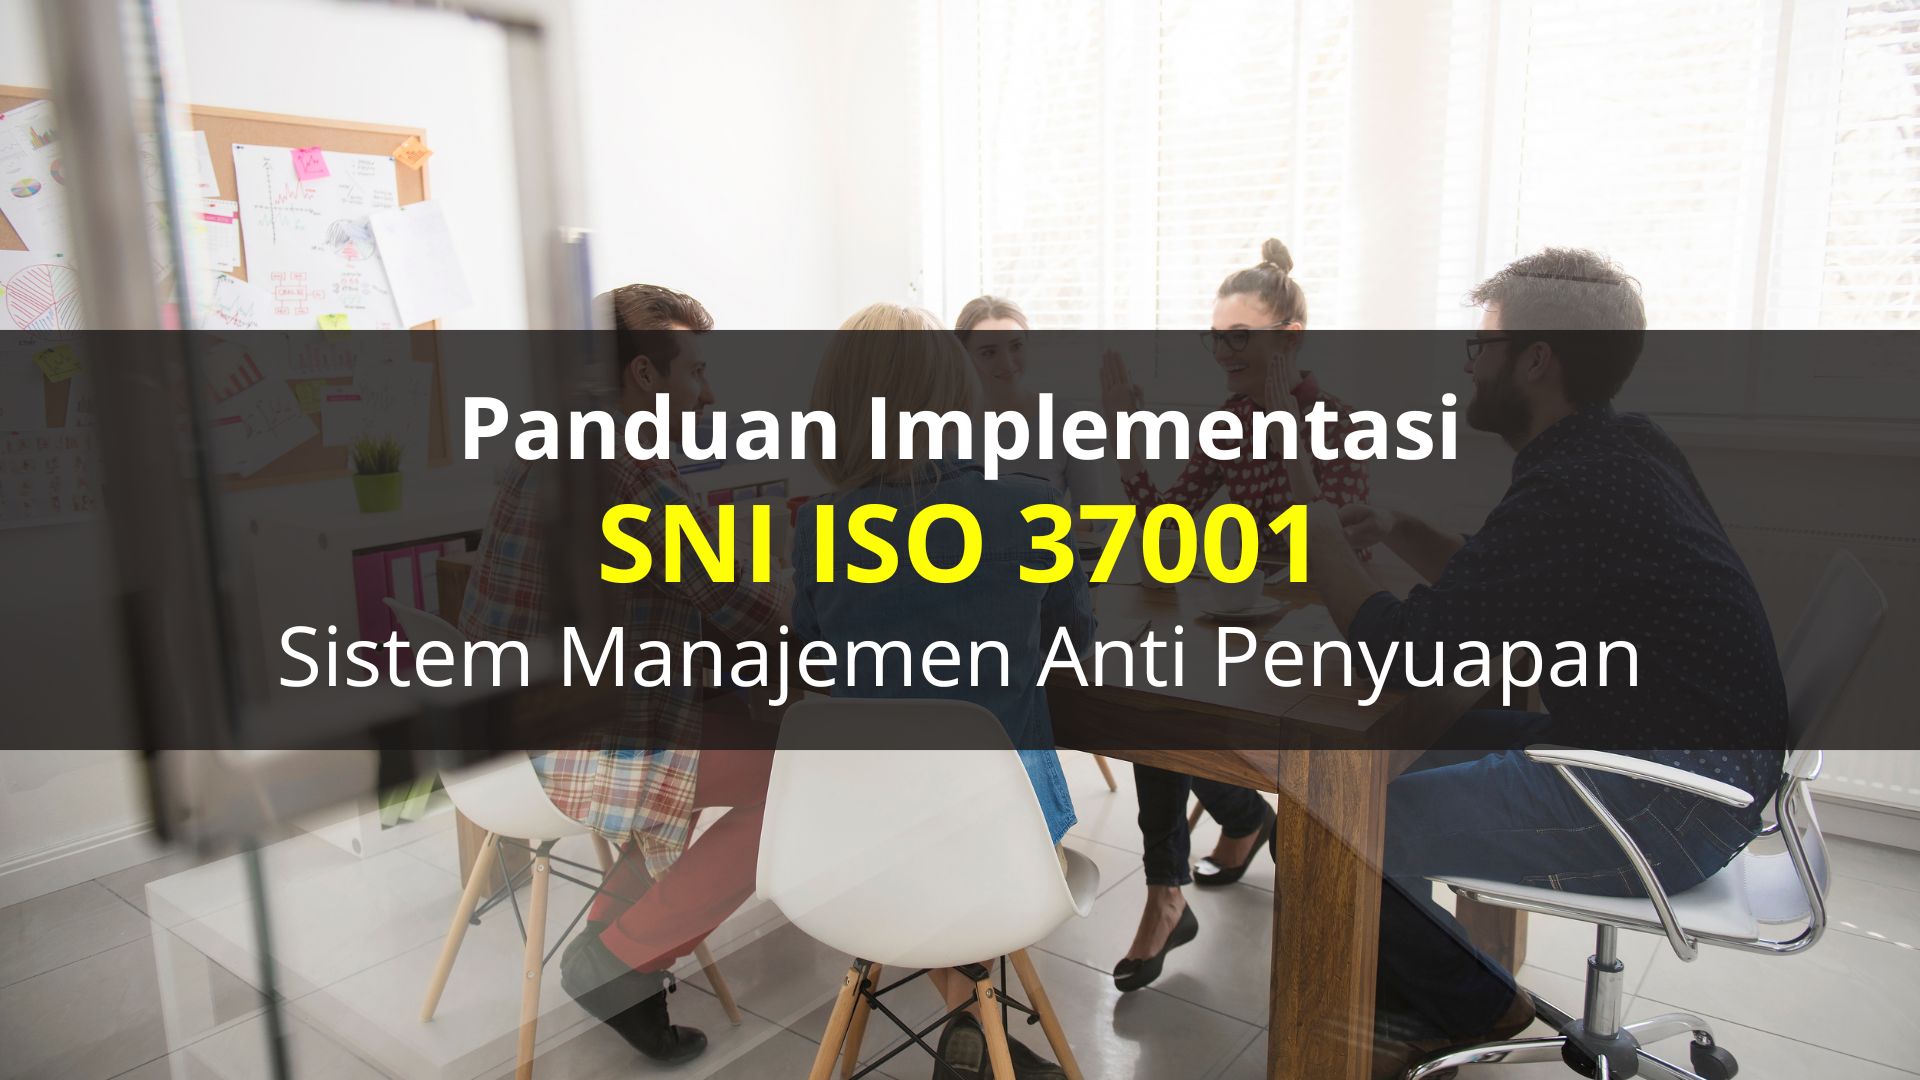 Panduan Komprehensif Implementasi ISO 37001 di BUMN